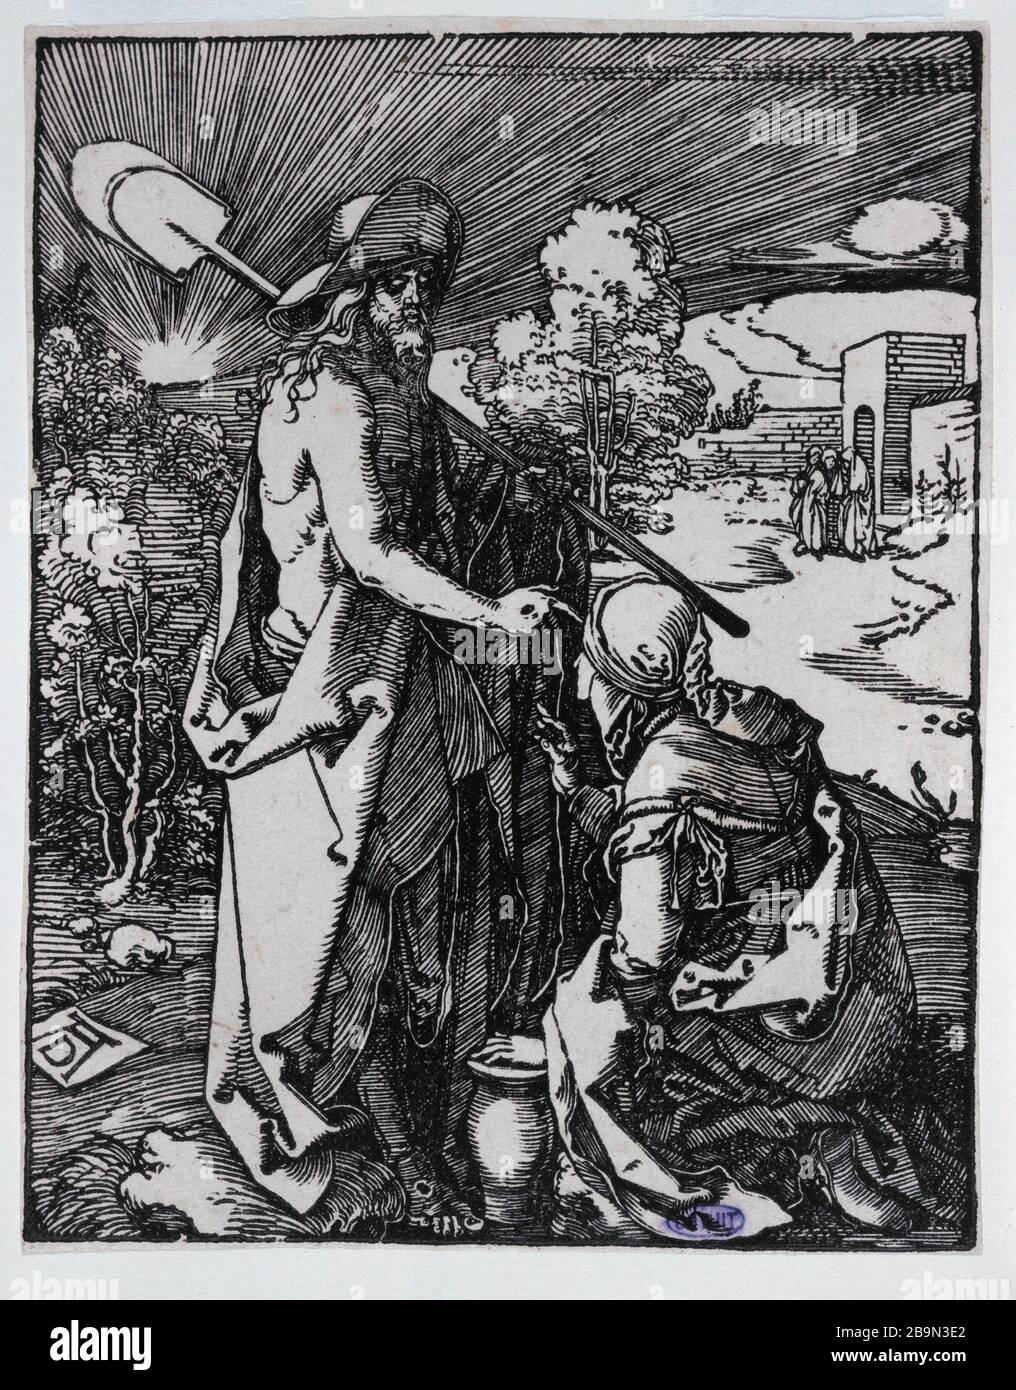 CHRIST AND MARY MAGDALENE Albrecht Durer (1471-1528). 'Le Christ et Marie-Madeleine'. (B 47). Gravure, XVIème siècle. Musée des Beaux-Arts de la Ville de Paris, Petit Palais. Stock Photo